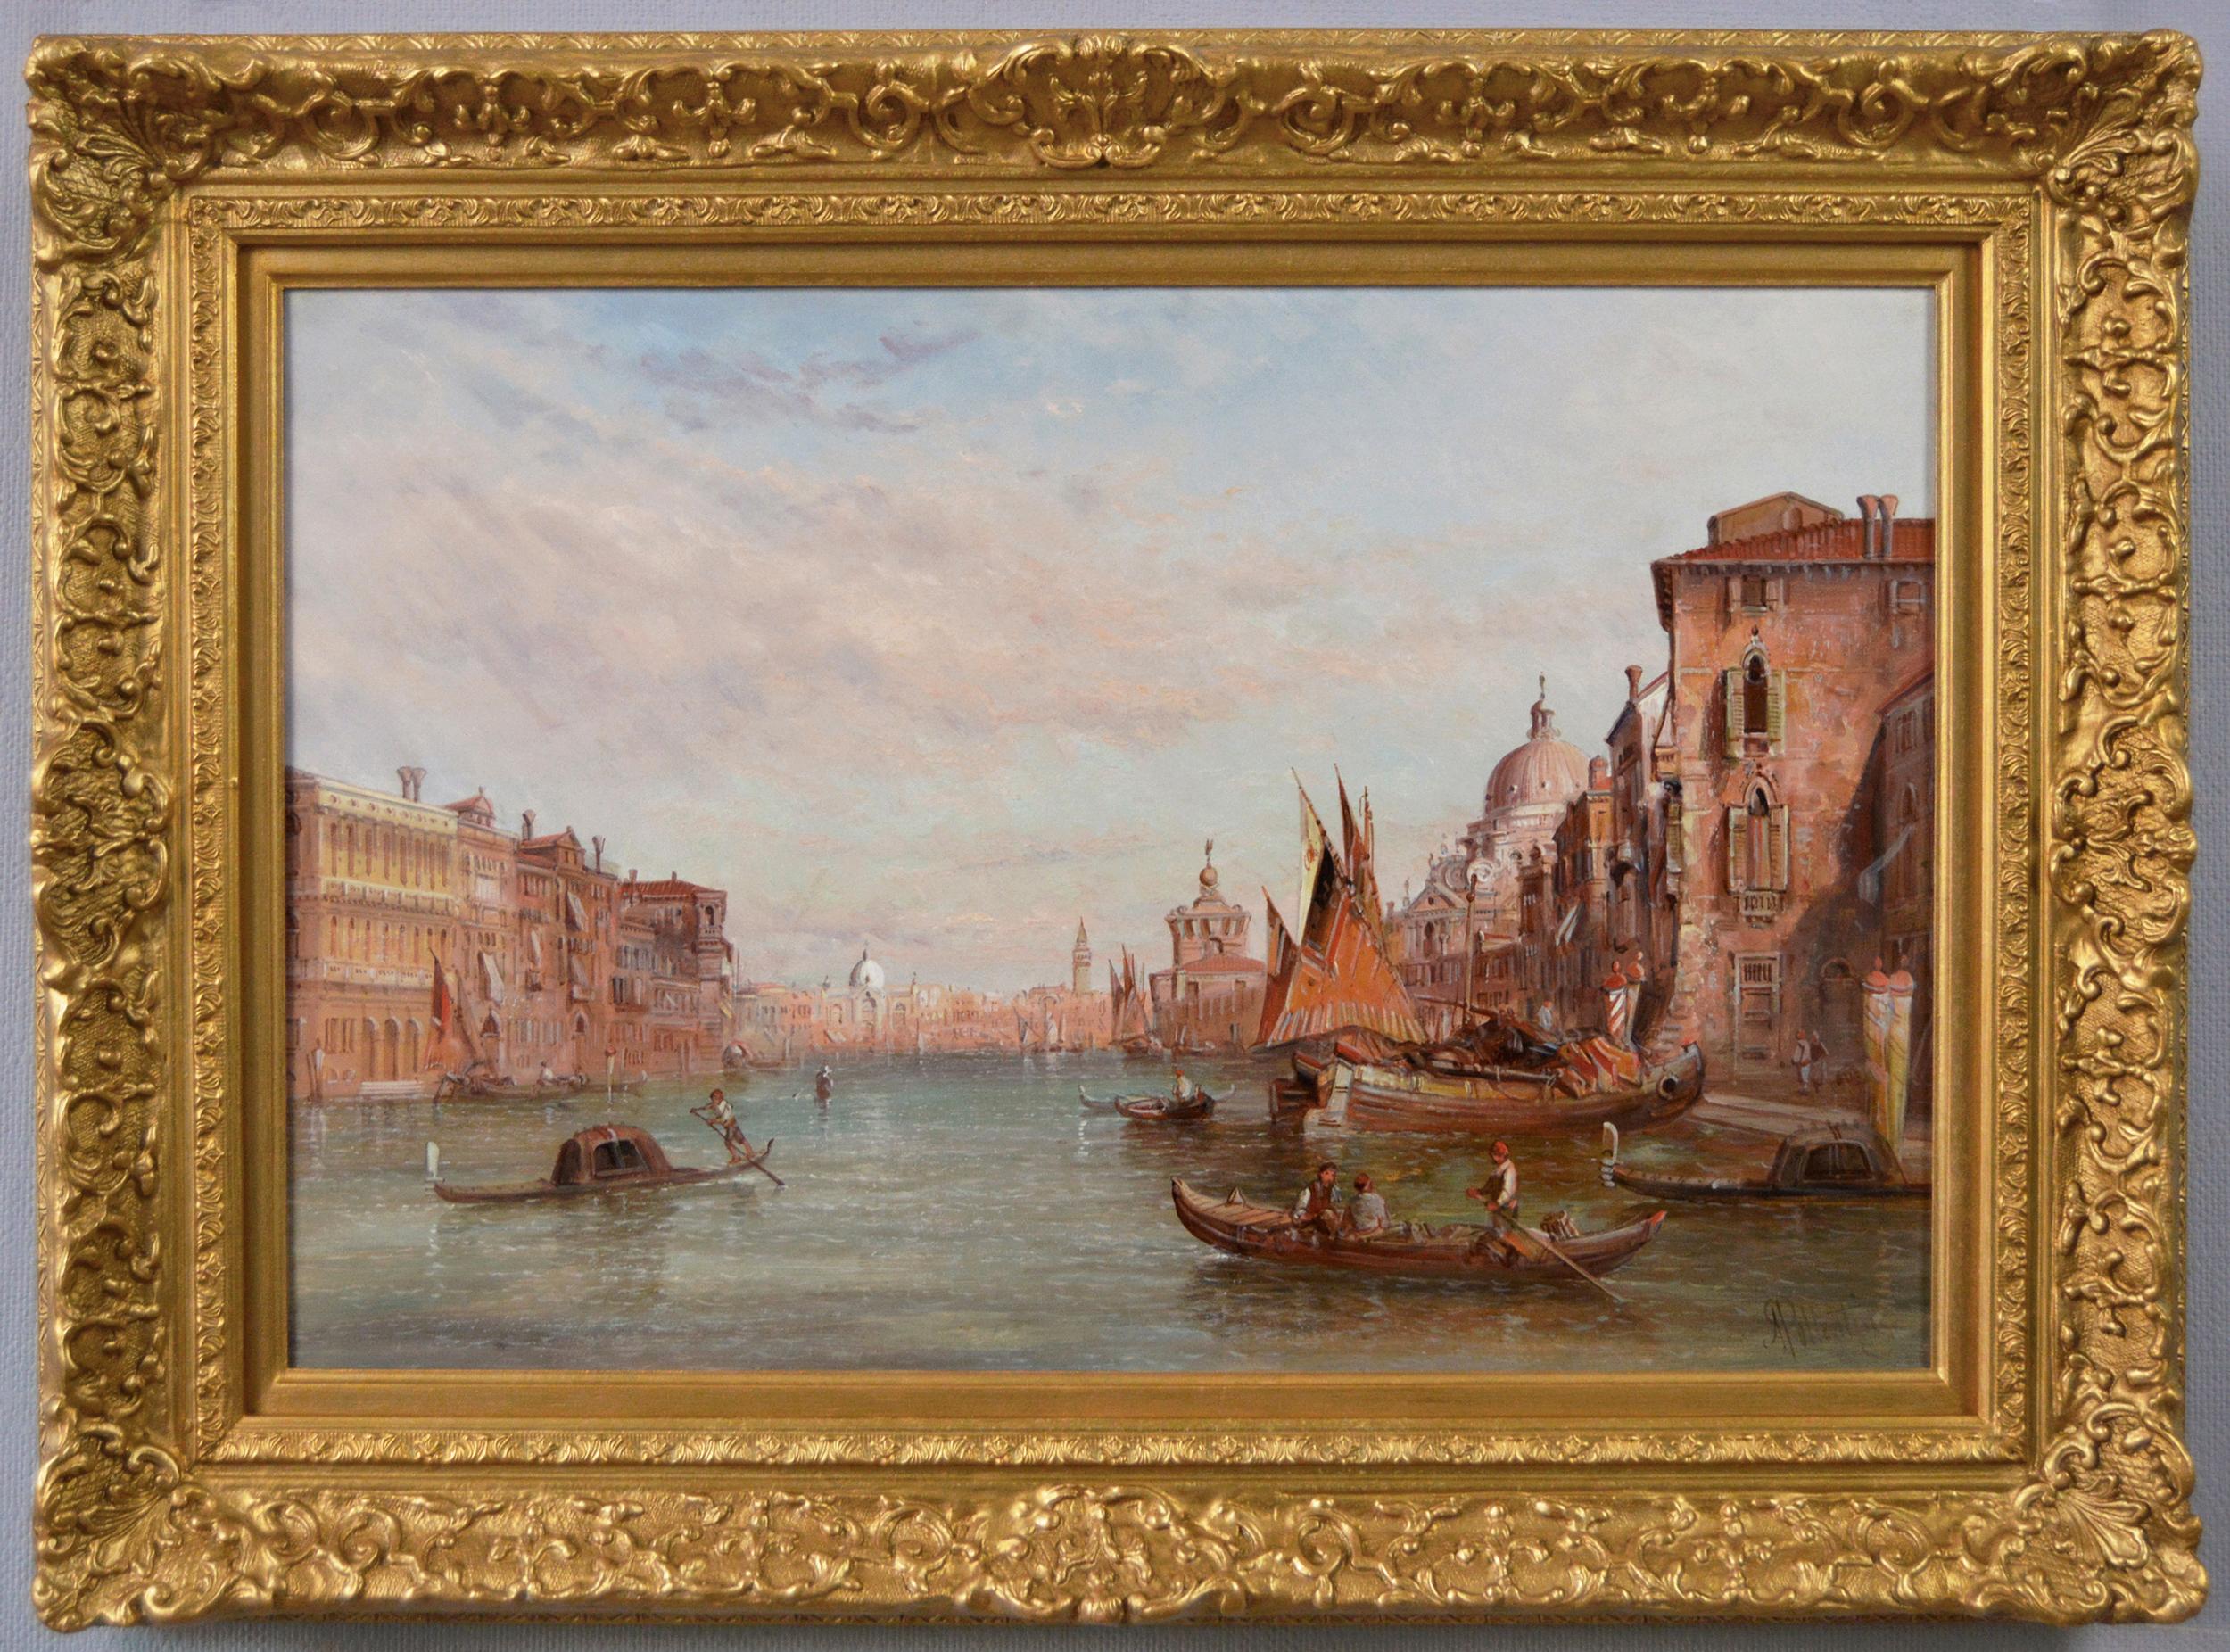 Ölgemälde der Dogana aus dem 19. Jahrhundert, Venedig 